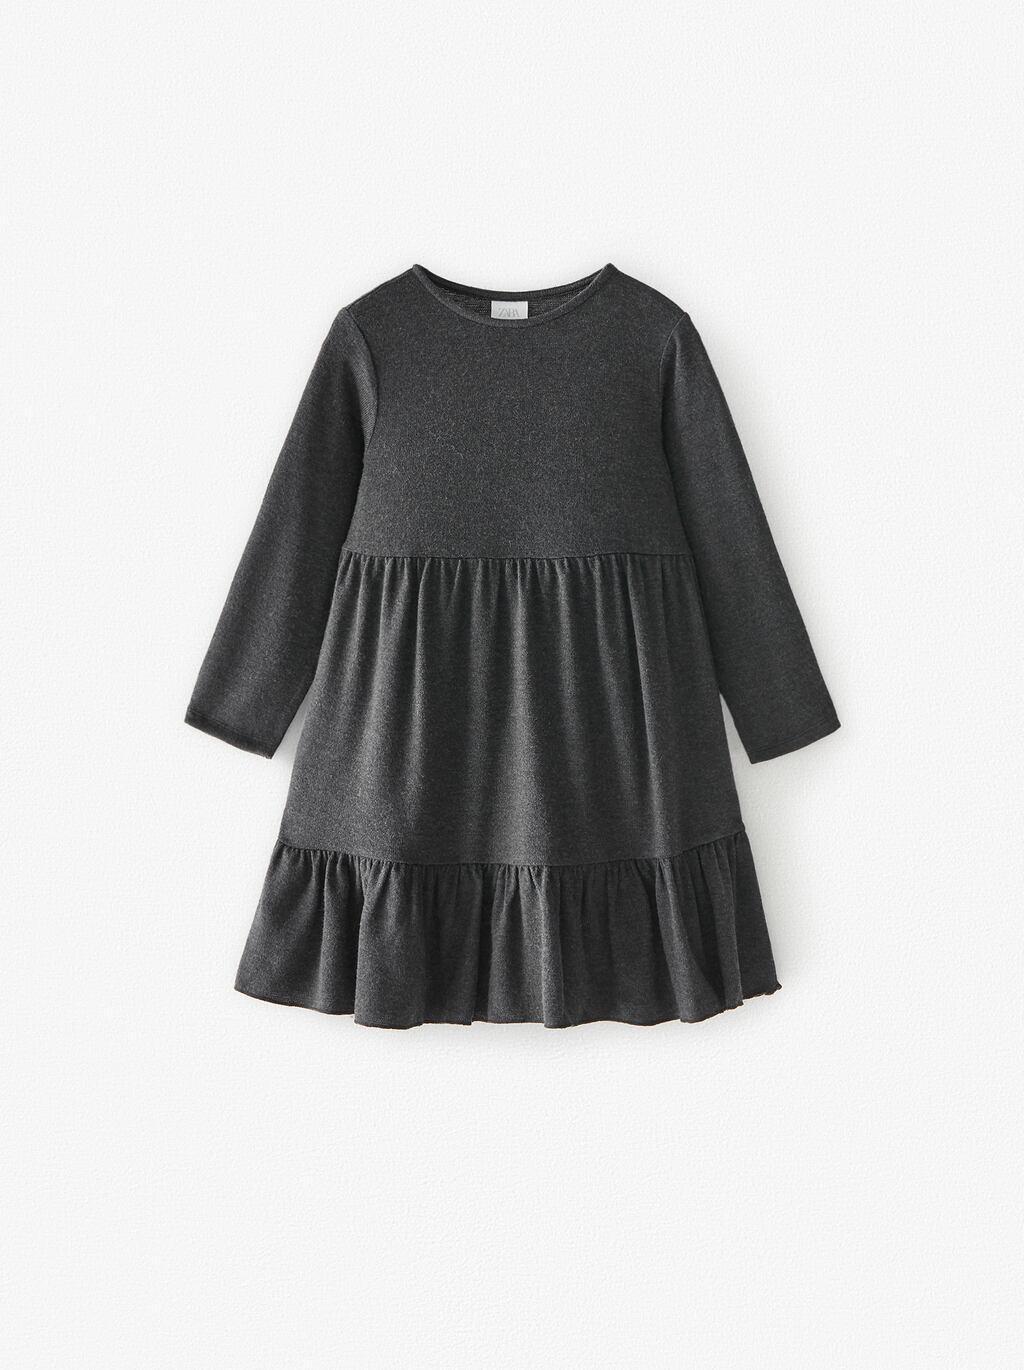 Отзыв на Платье с ЗМЕИ из Интернет-Магазина Zara